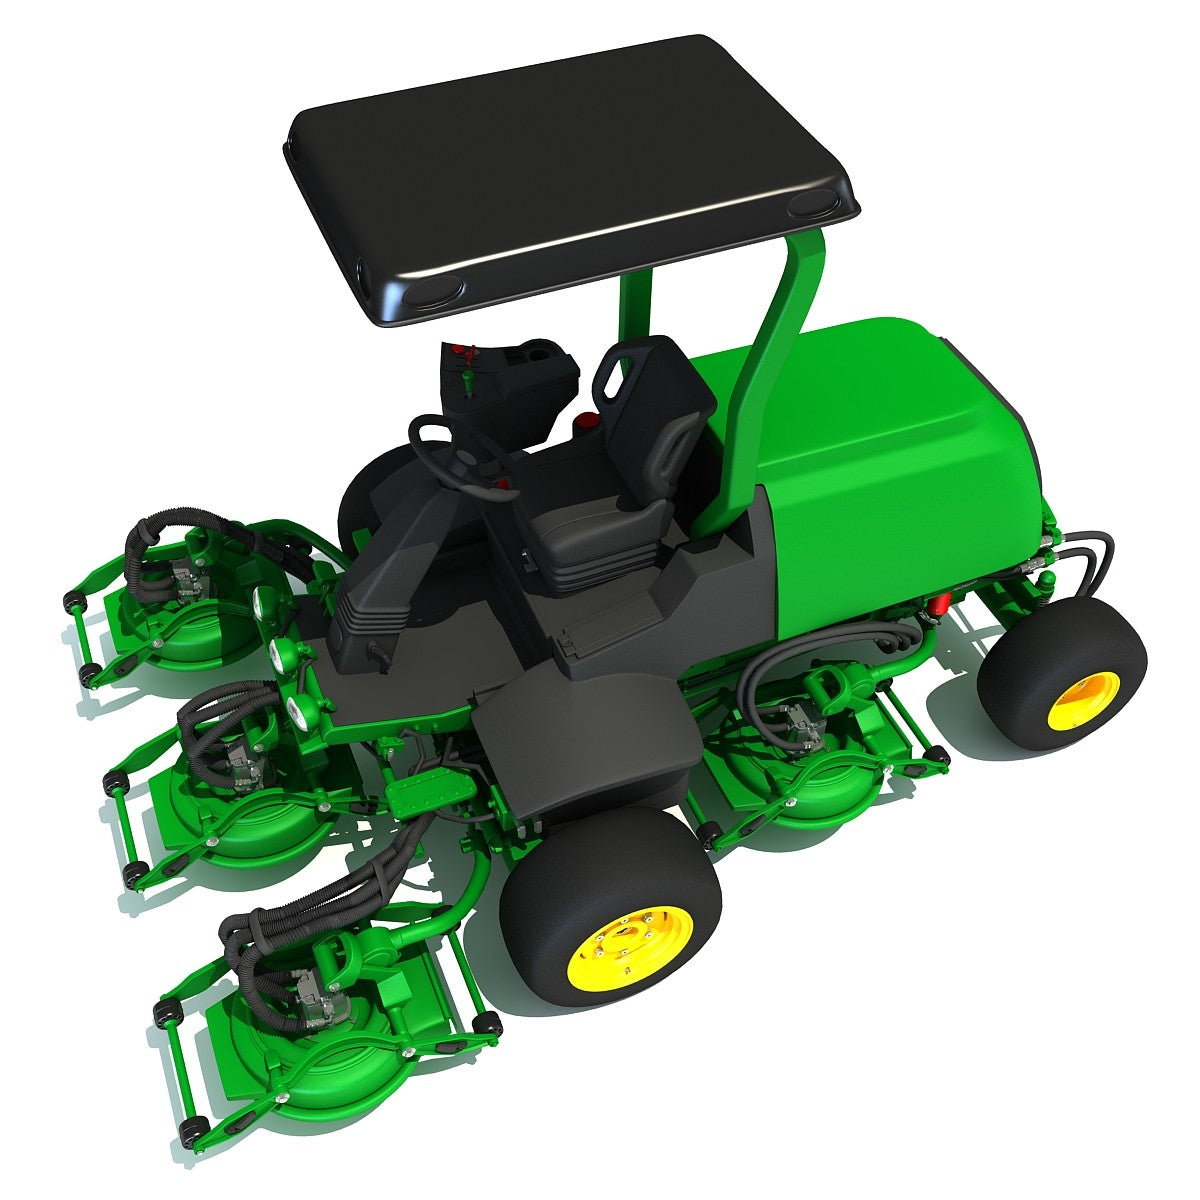 Lawn Mower Terraincut Model